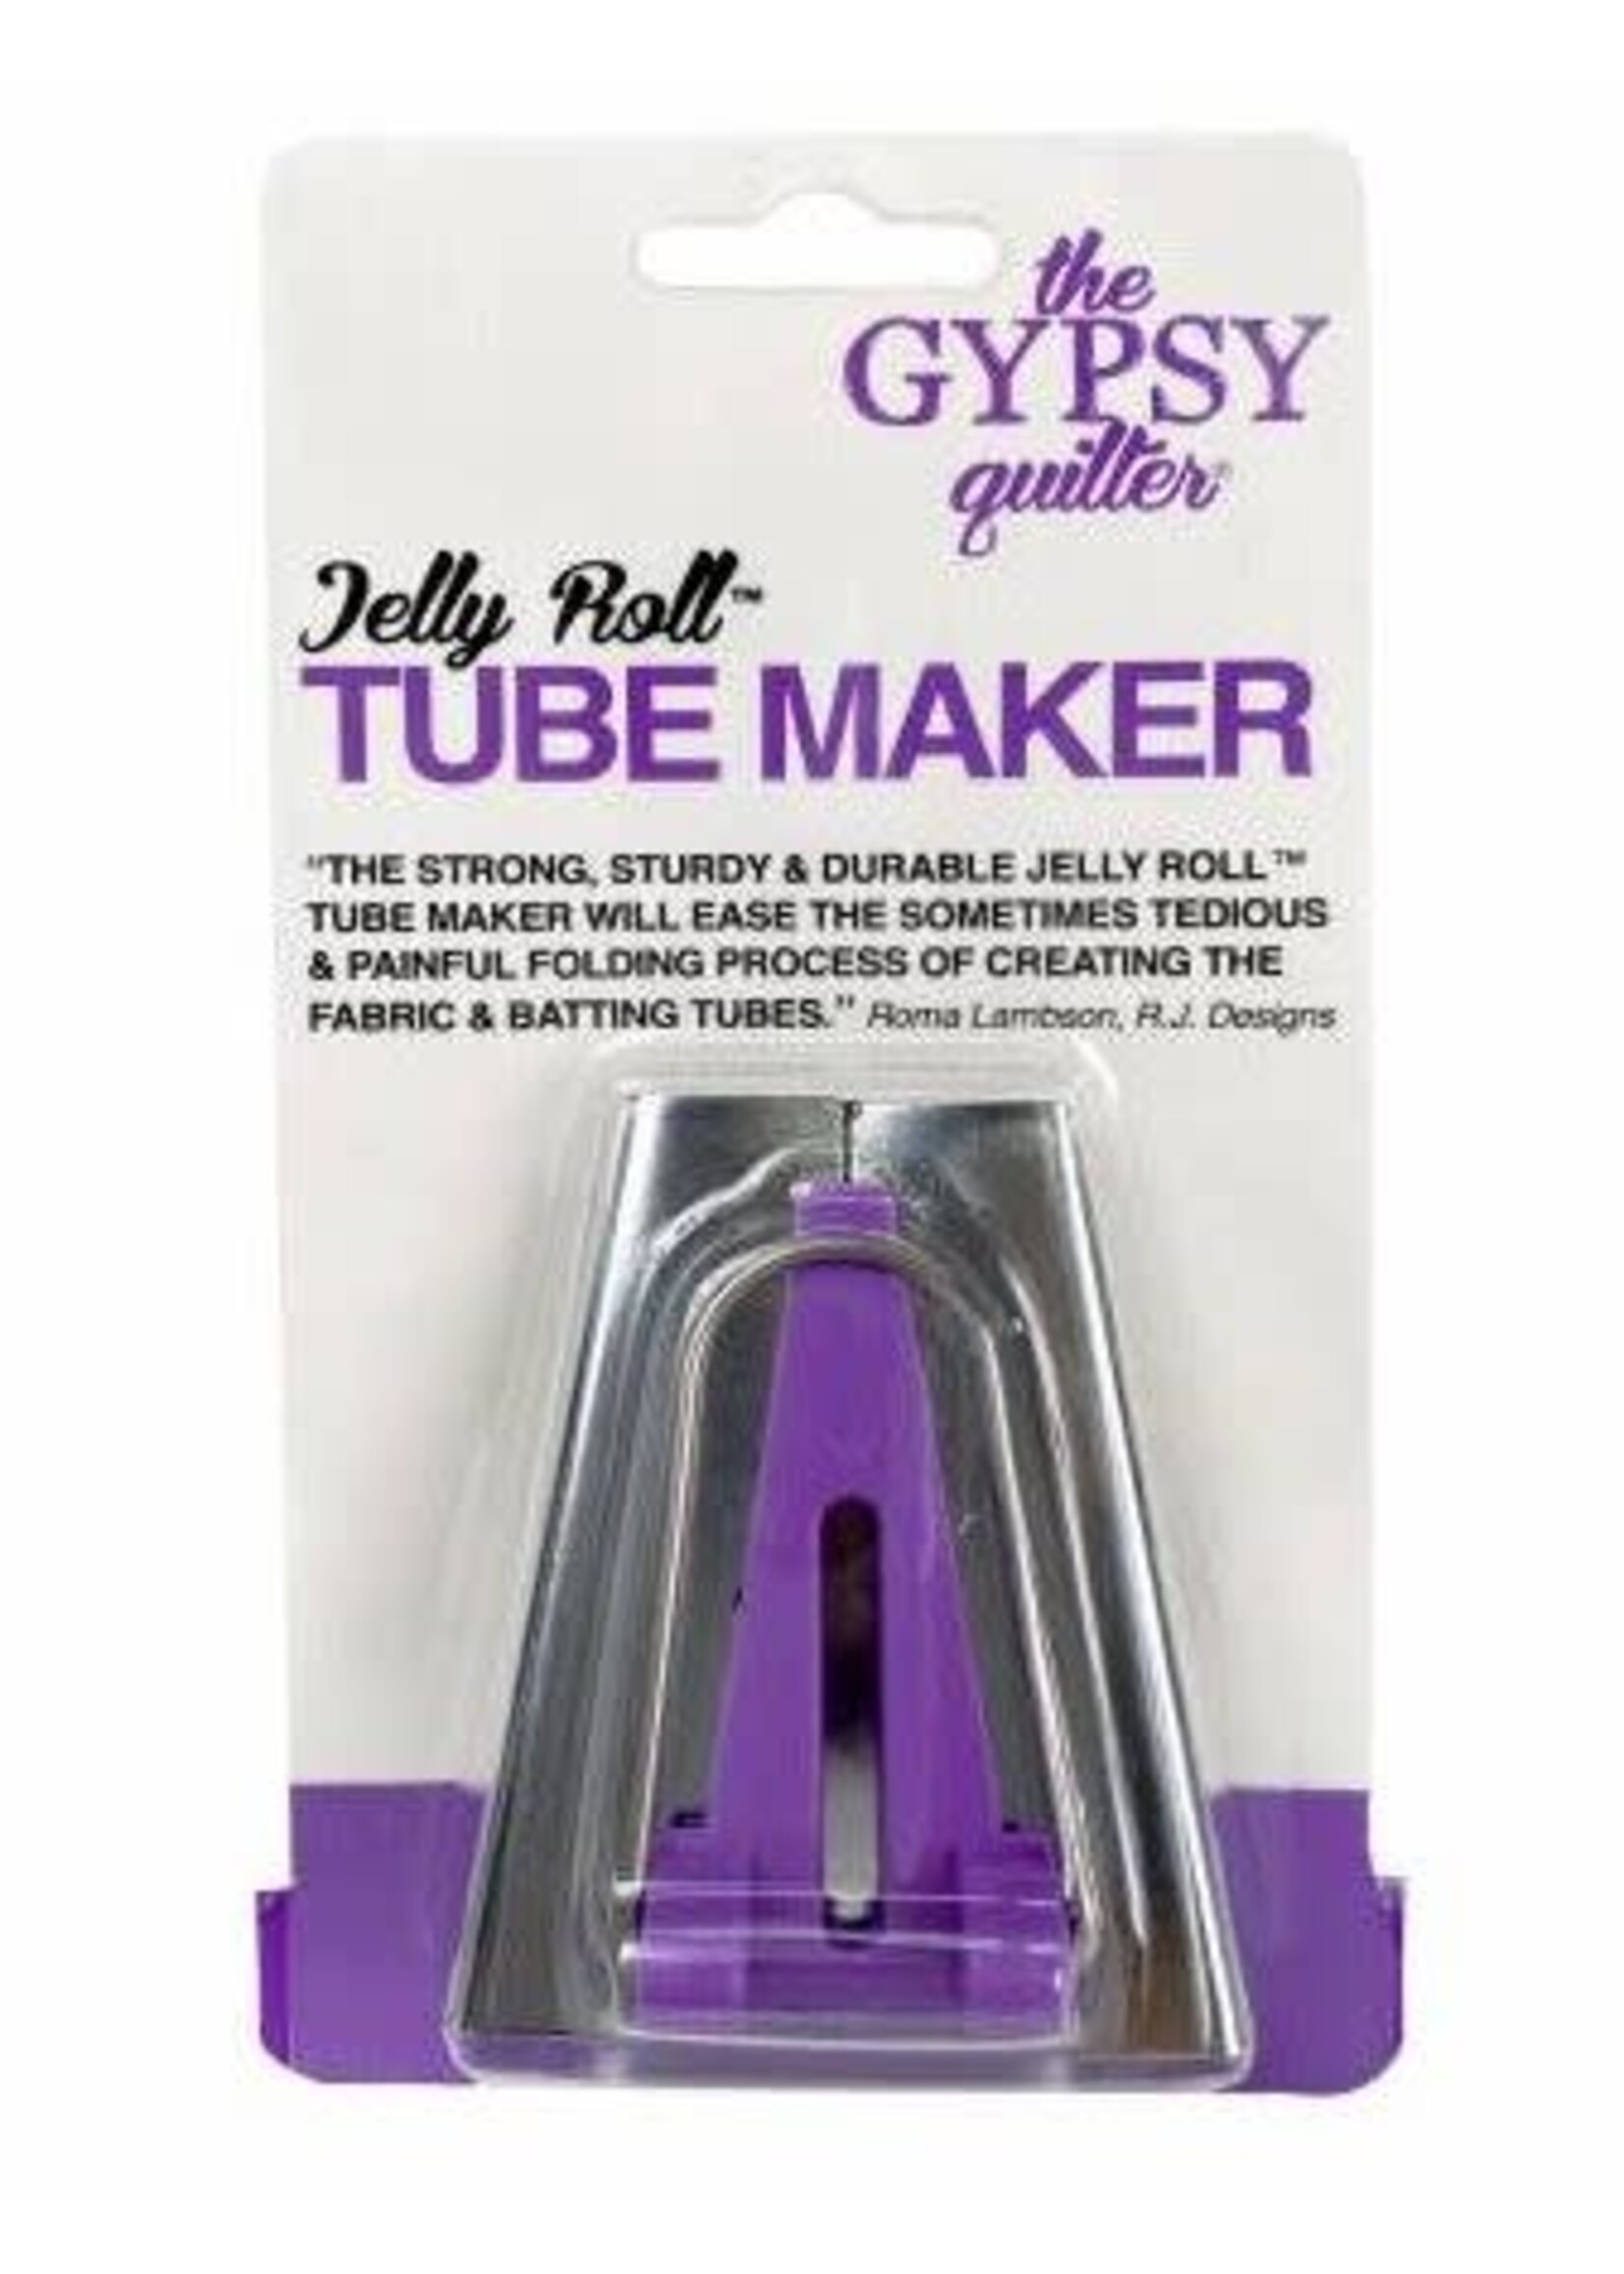 Jelly Roll Tube Maker